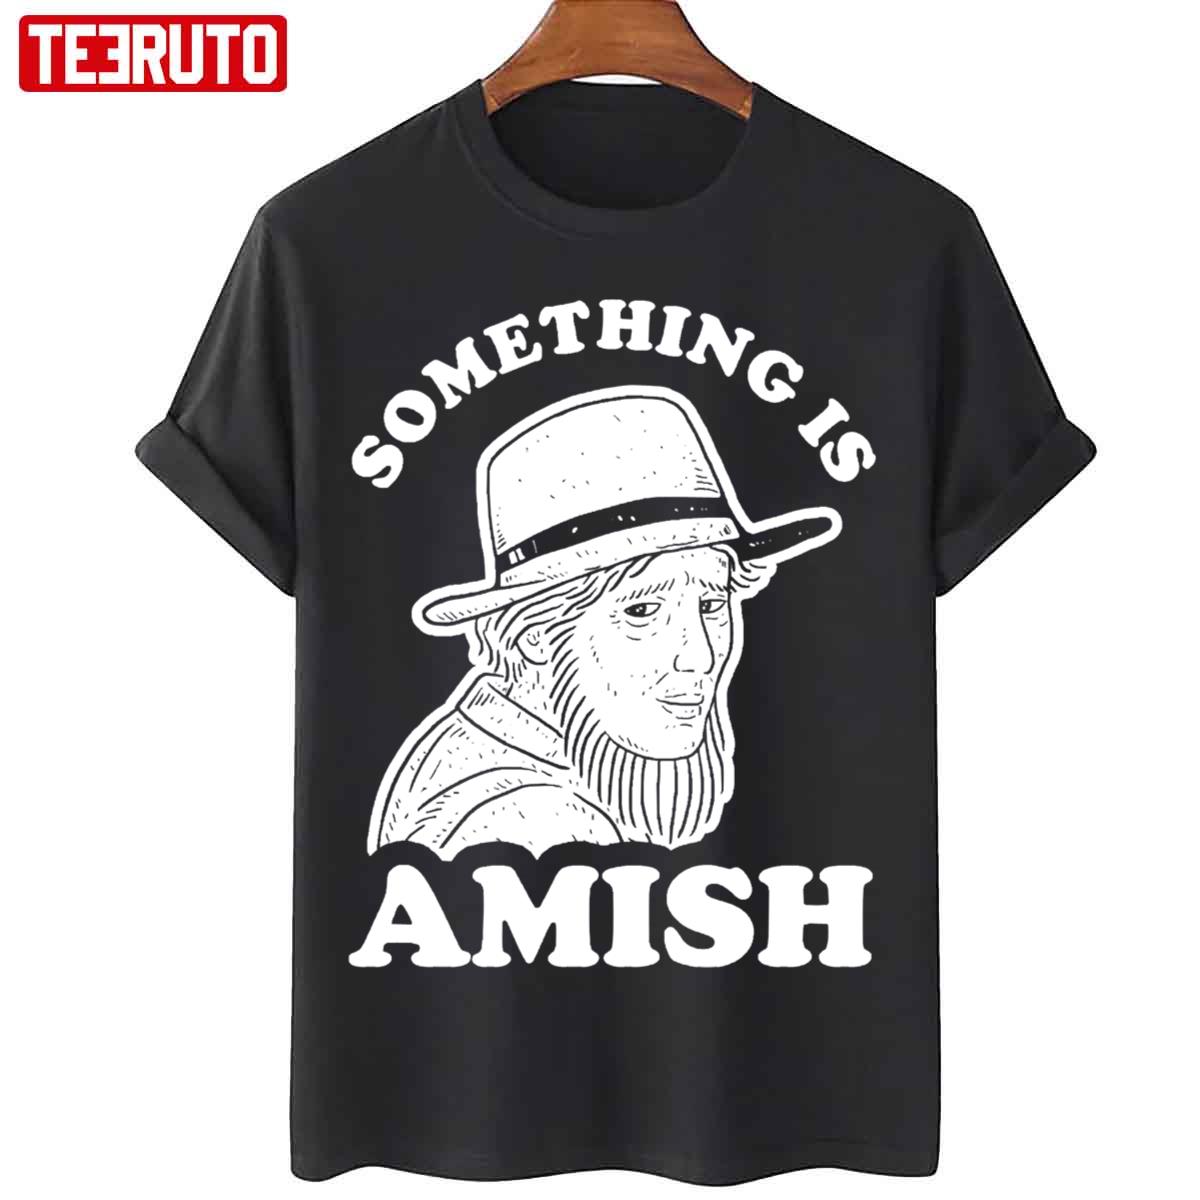 Something Is Amish Funny Unisex Sweatshirt